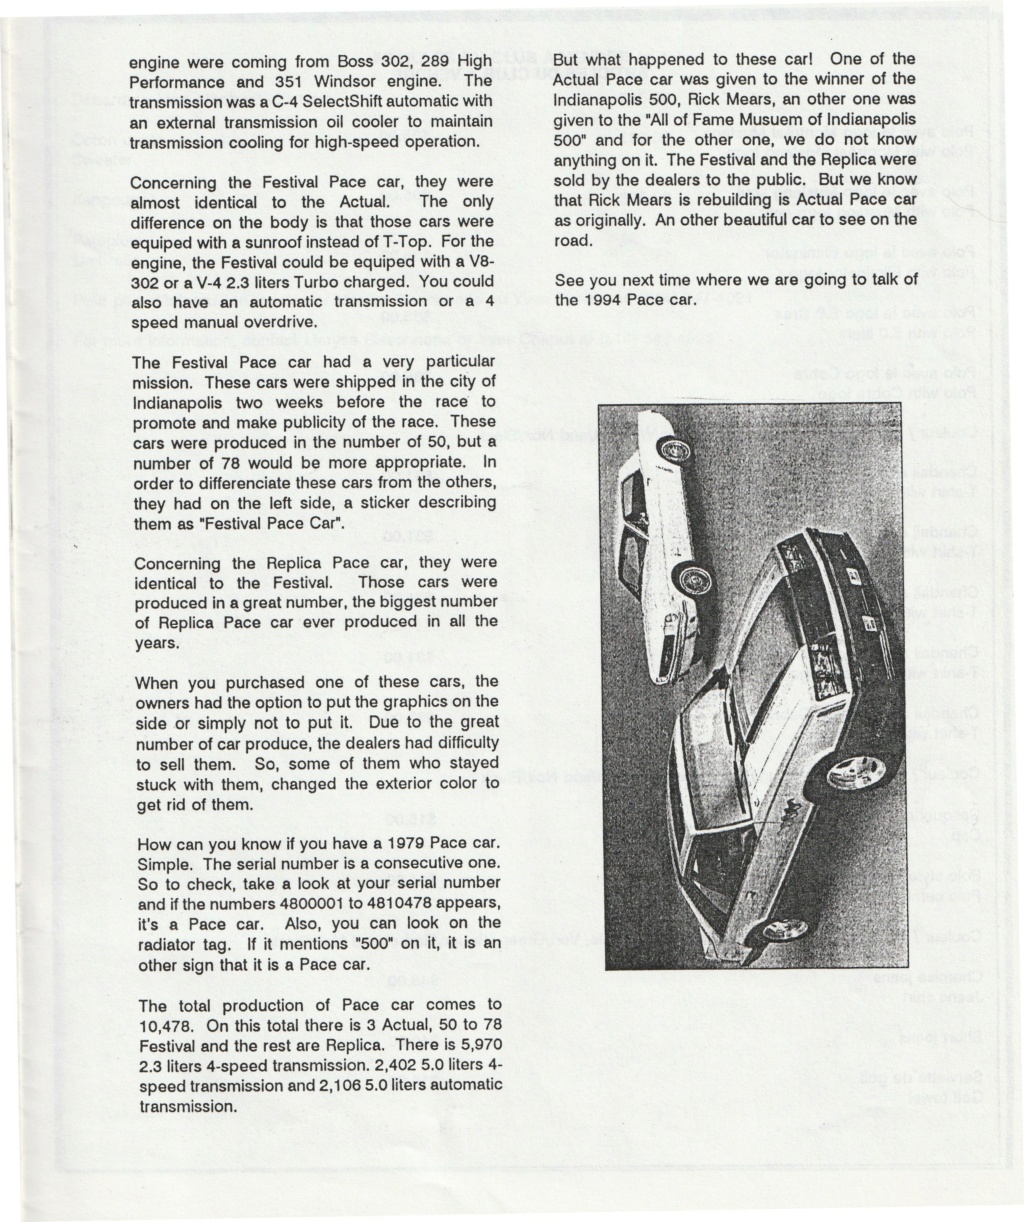 Montréal Mustang dans le temps! 1981 à aujourd'hui (Histoire en photos) - Page 8 Img_2449